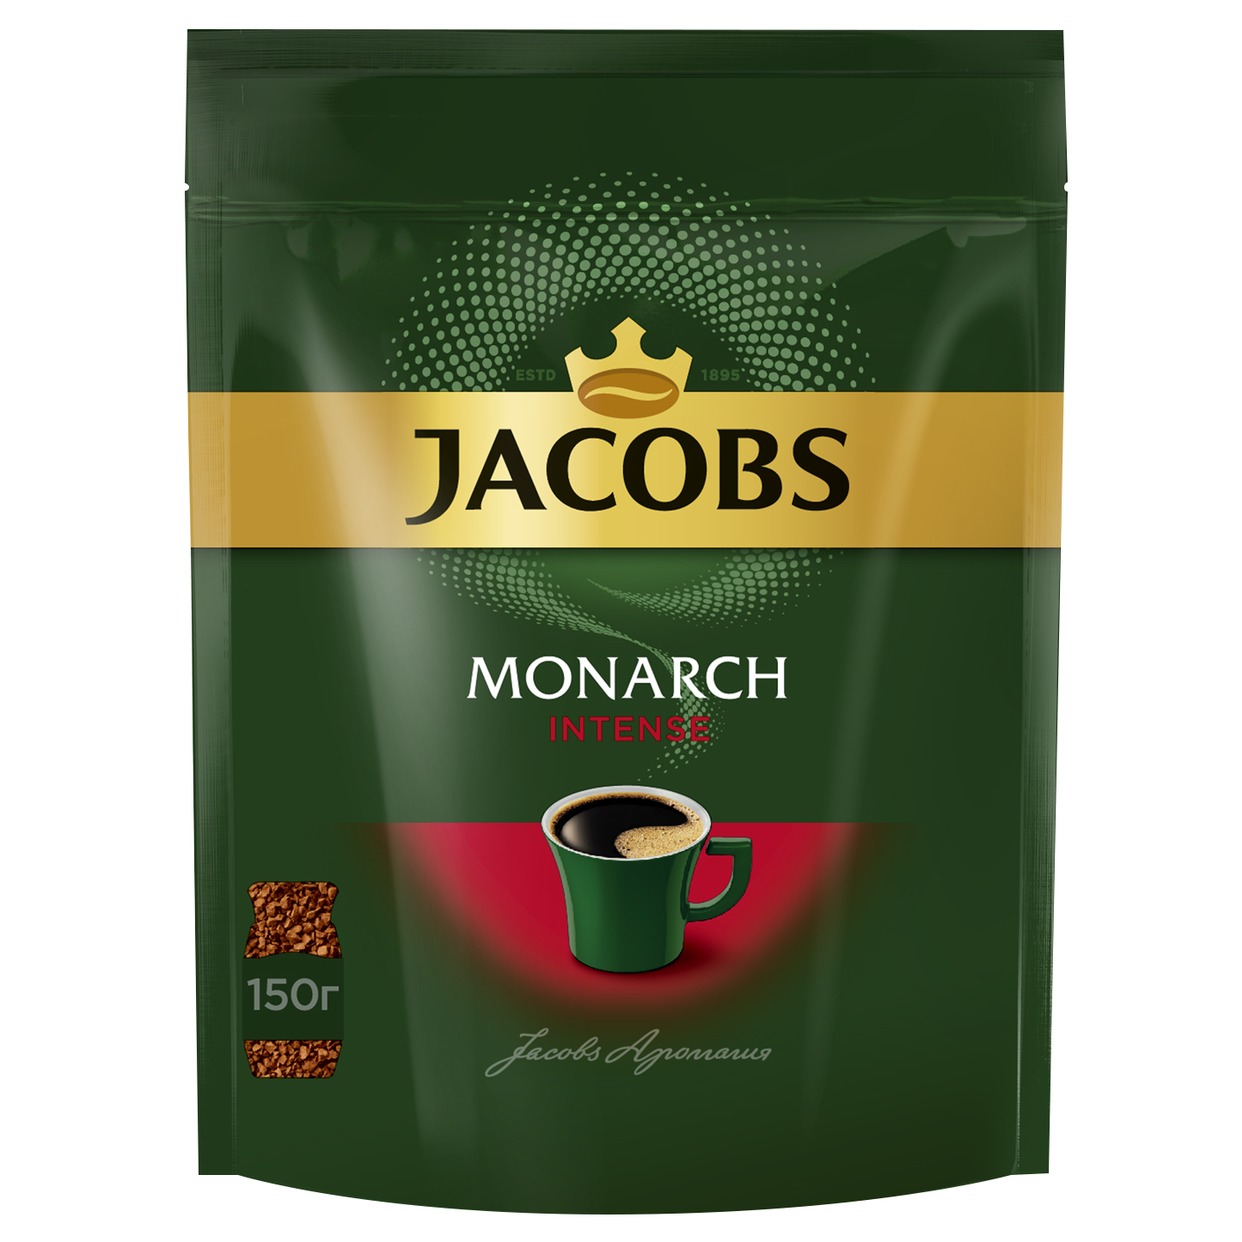 Кофе Jacobs Monarch Intense, растворимый, 150 г по акции в Пятерочке